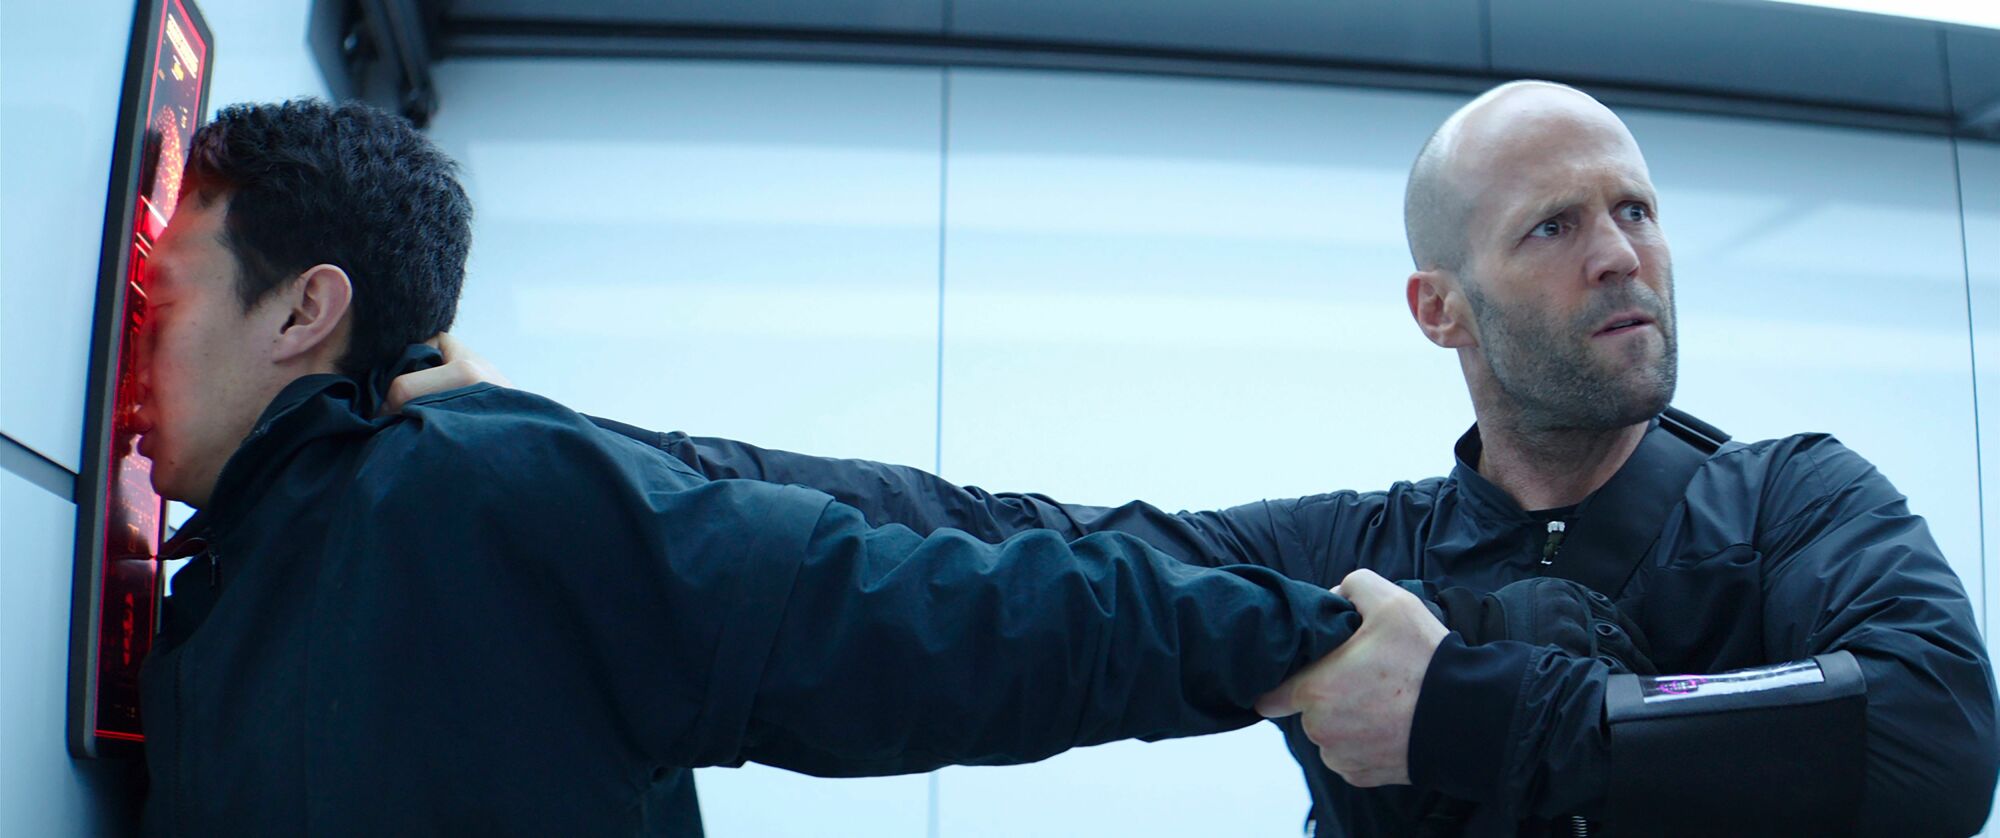 Jason Statham as Deckard Shaw in "Fast & Furious Presents: Hobbs & Shaw."